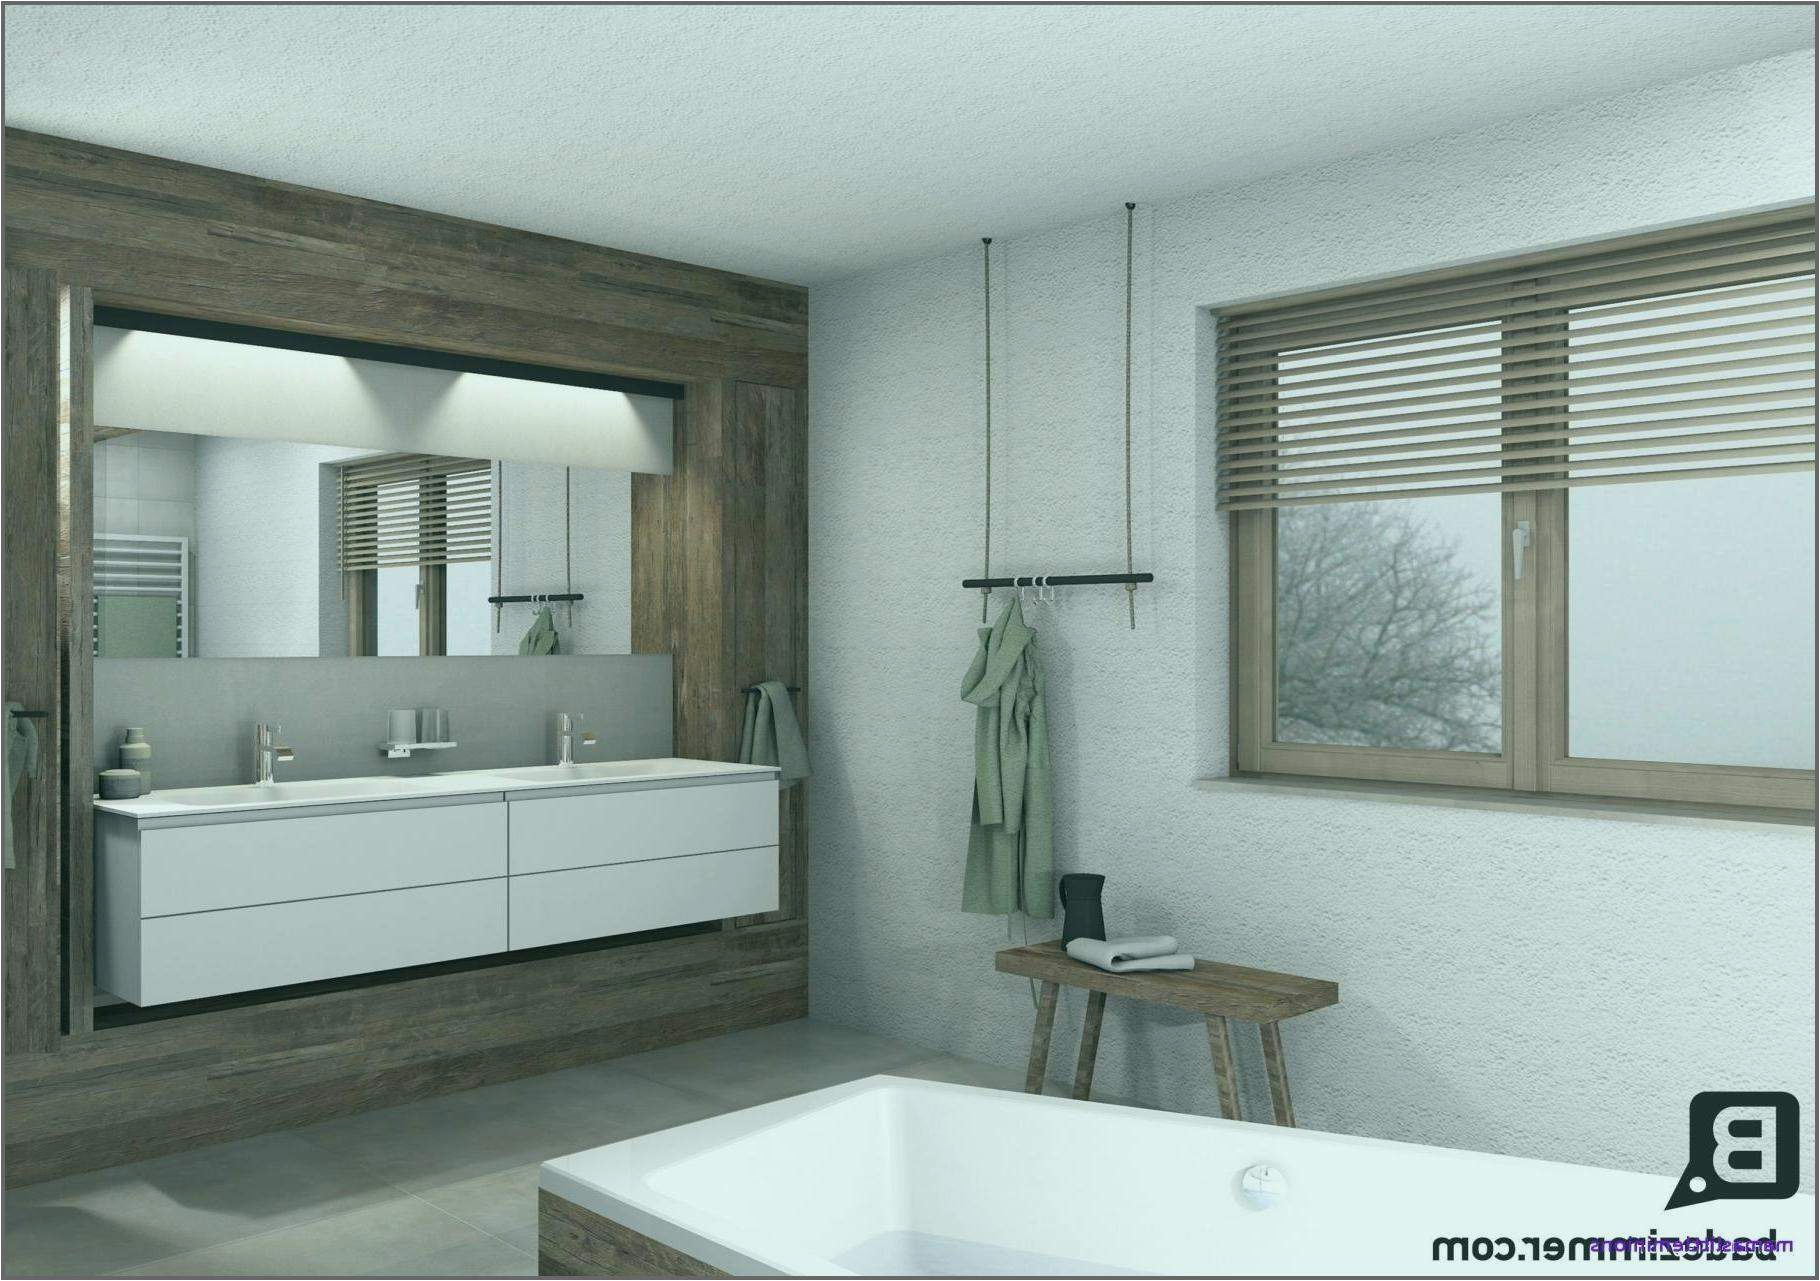 Neues Badezimmer Ideen 32 Luxus Fliesen Wohnzimmer Ideen Elegant